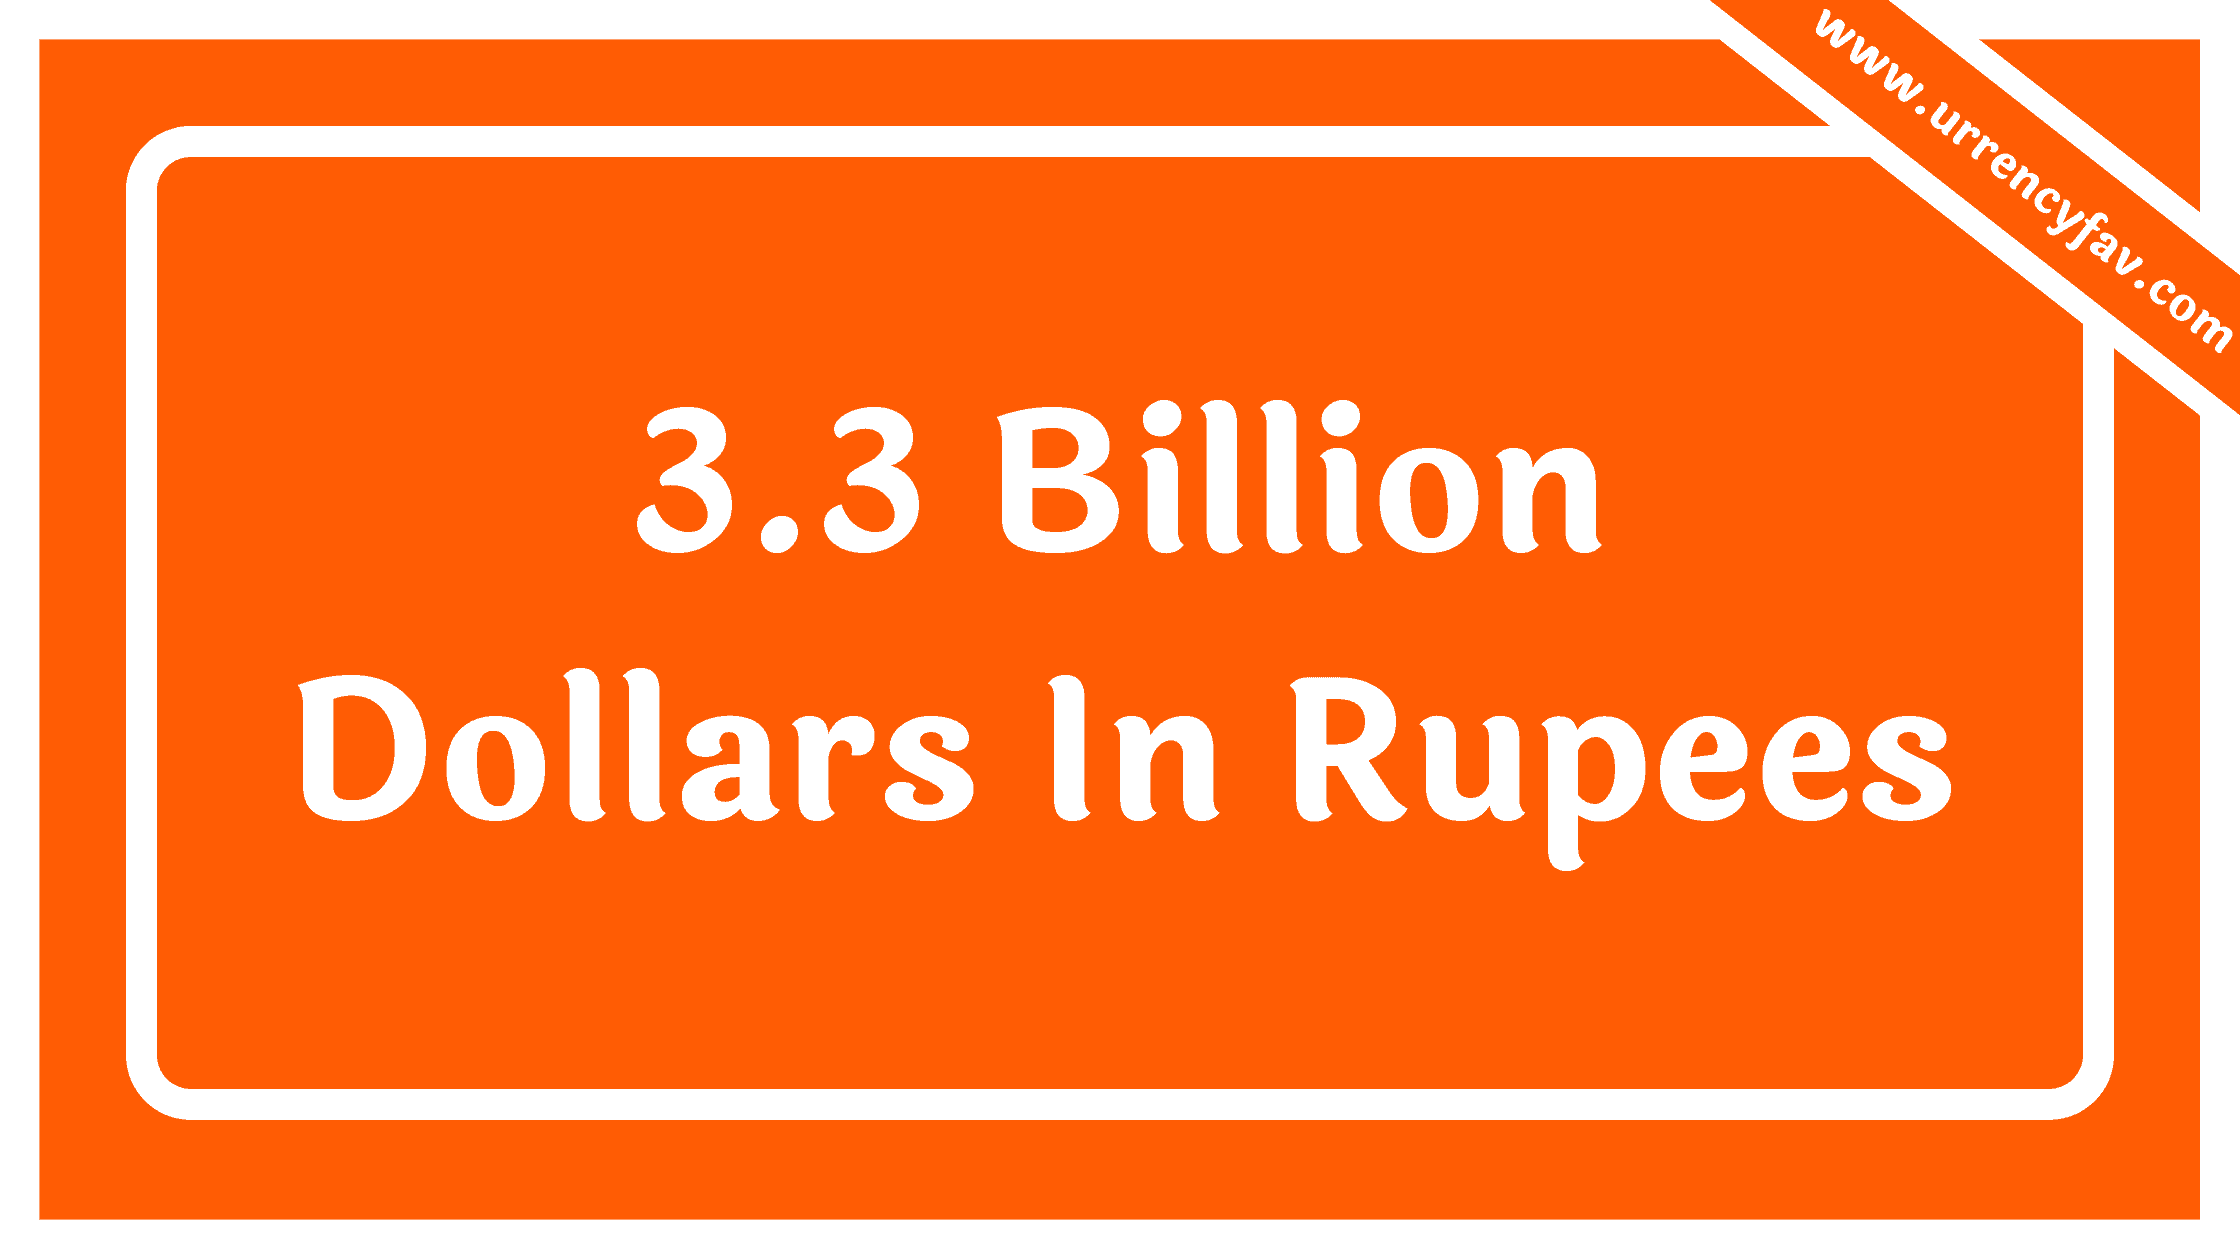 3.3 Billion Dollars In Rupees